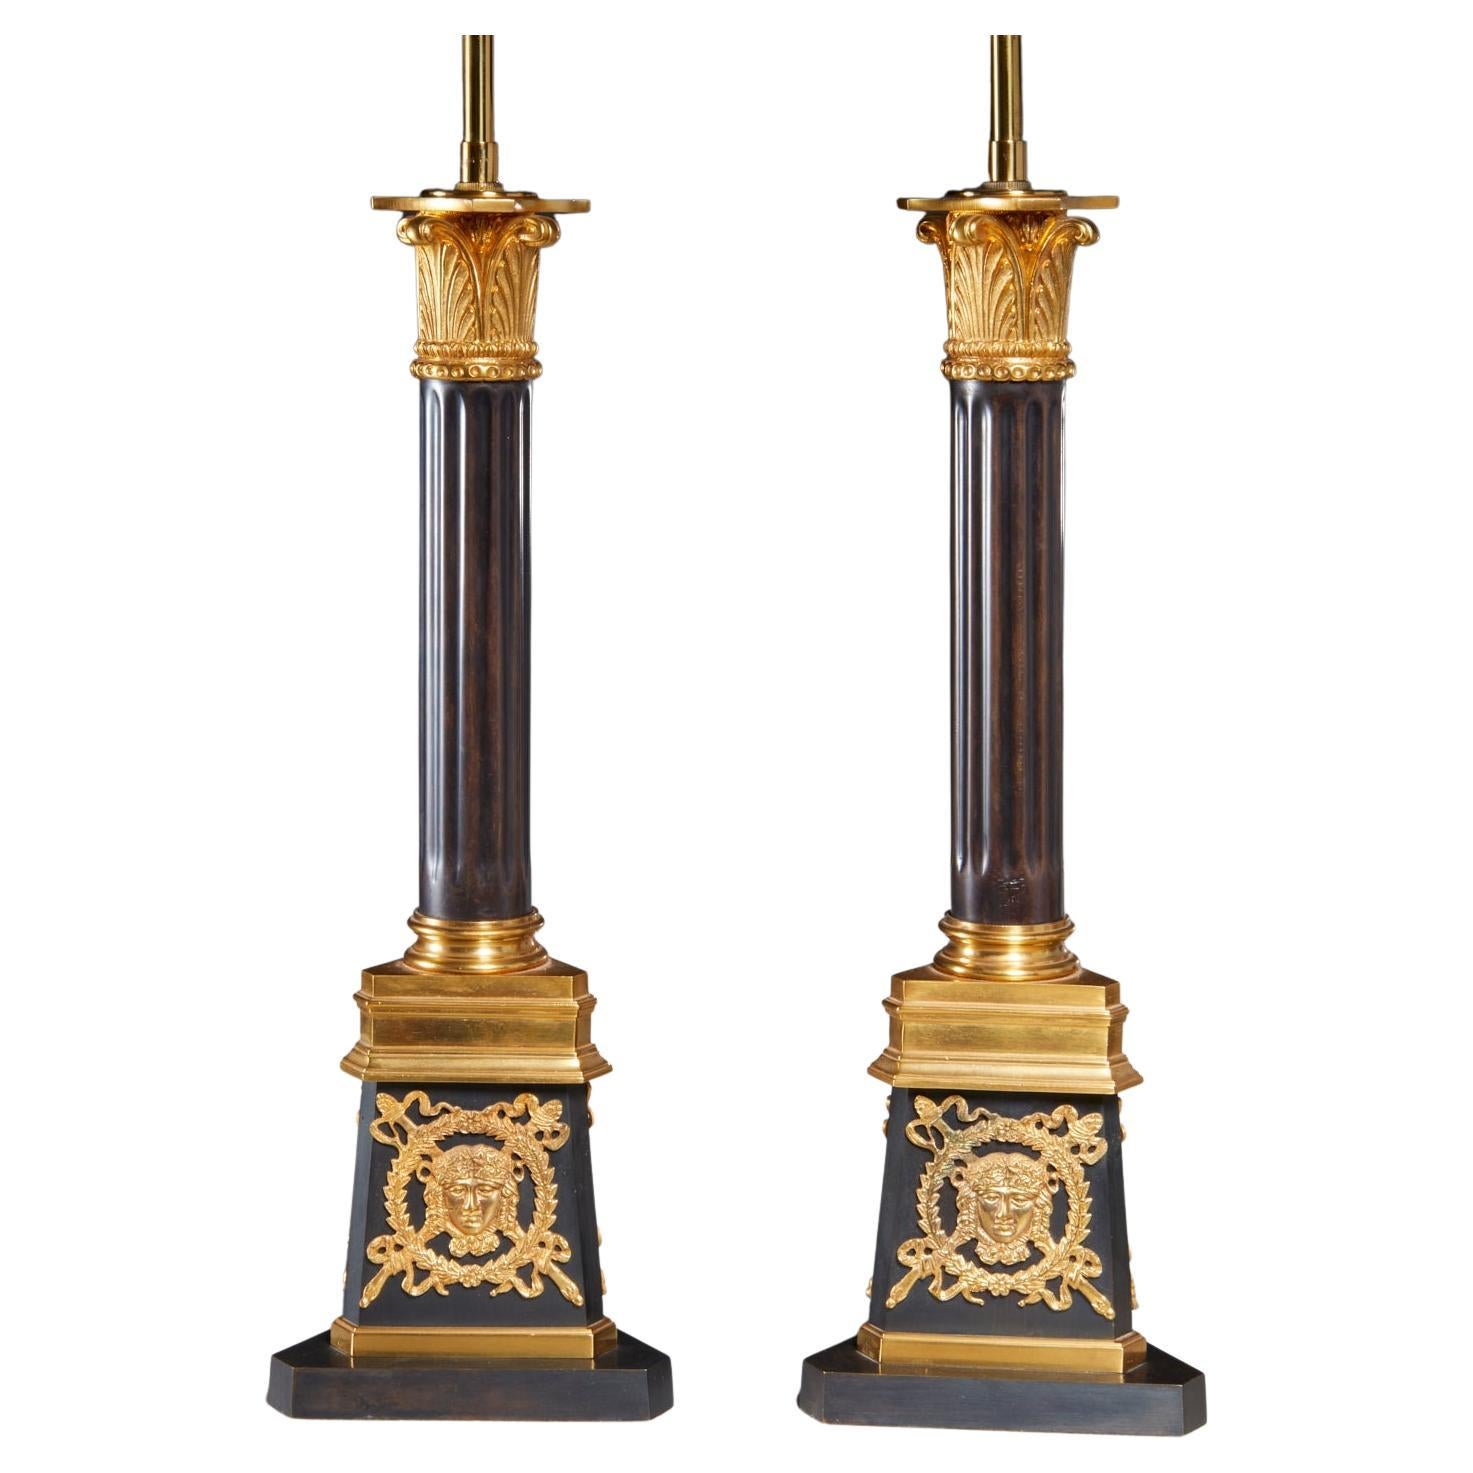 Fin du 20e siècle, paire de lampes de table italiennes de style Louis XVI en bronze doré, bronze patiné et bronze doré par Gherardo Degli Albizzi. De belle qualité, à deux lumières, cannelé, corps colonnaire, décor classique appliqué au chapiteau